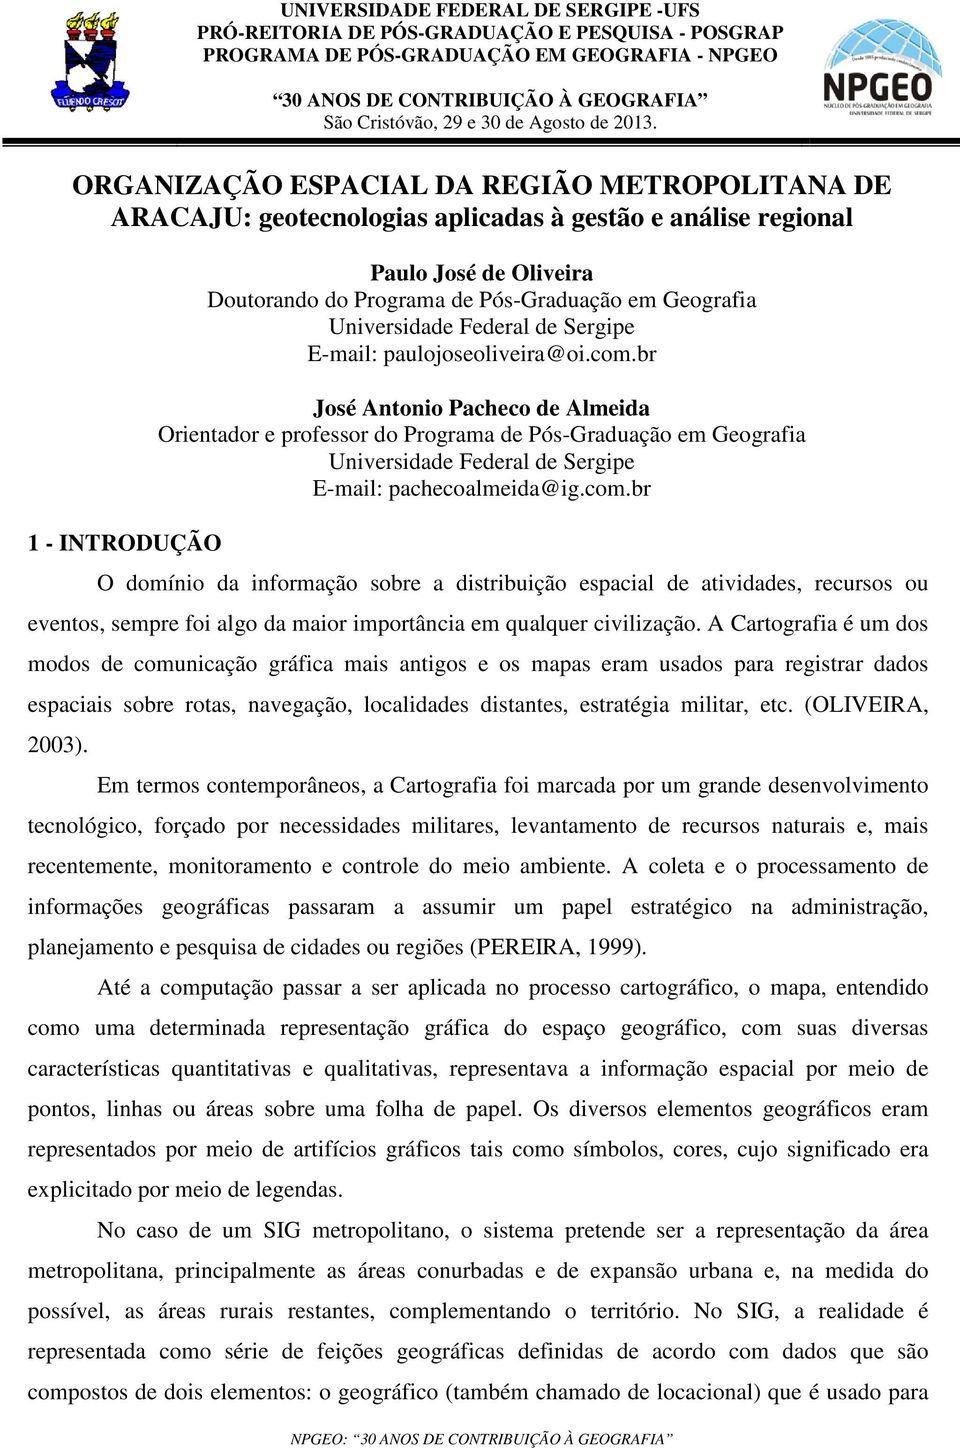 ORGANIZAÇÃO ESPACIAL DA REGIÃO METROPOLITANA DE ARACAJU: geotecnologias aplicadas à gestão e análise regional 1 - INTRODUÇÃO Paulo José de Oliveira Doutorando do Programa de Pós-Graduação em